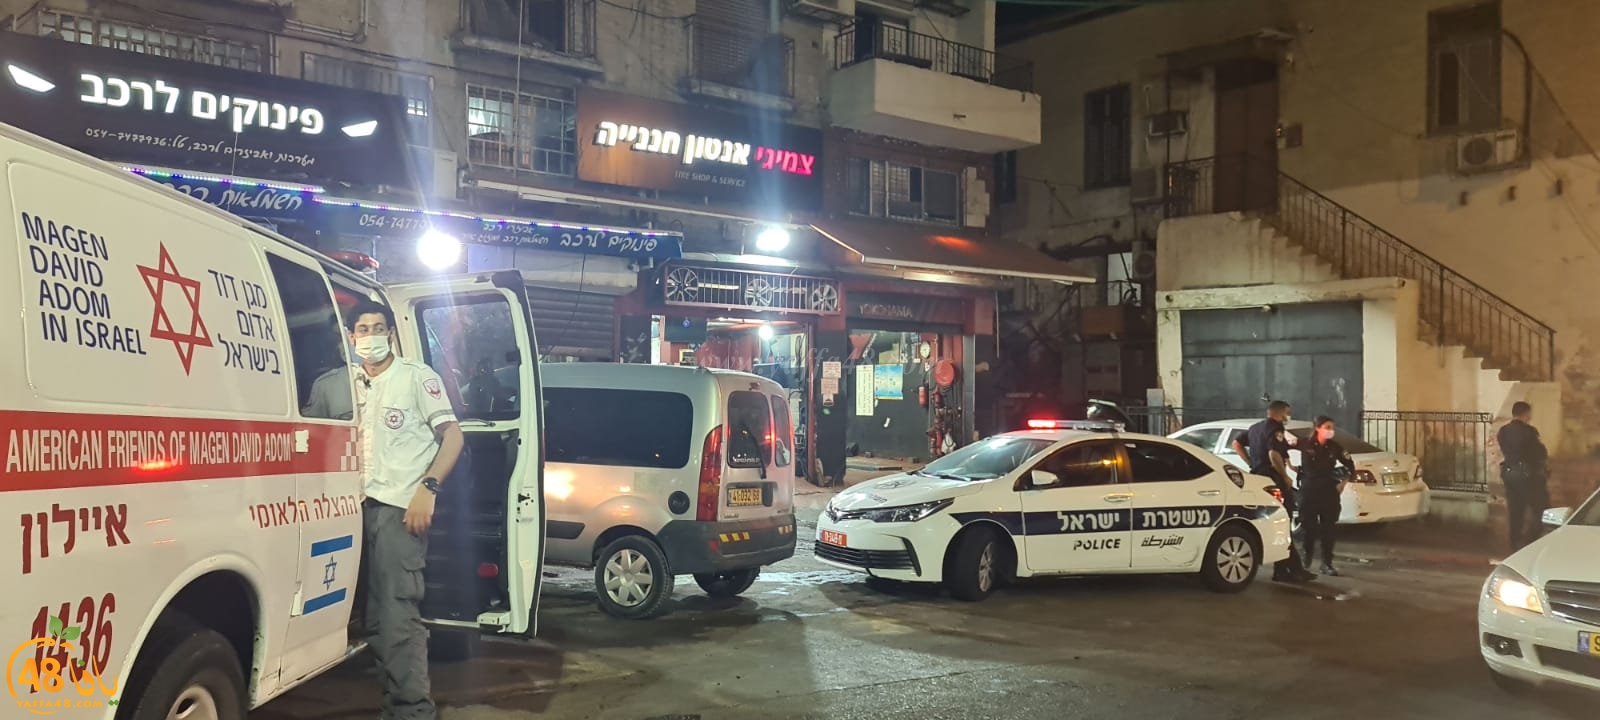  يافا: إطلاق نار في شارع ييفت دون اصابات والشرطة تُغلق الشارع